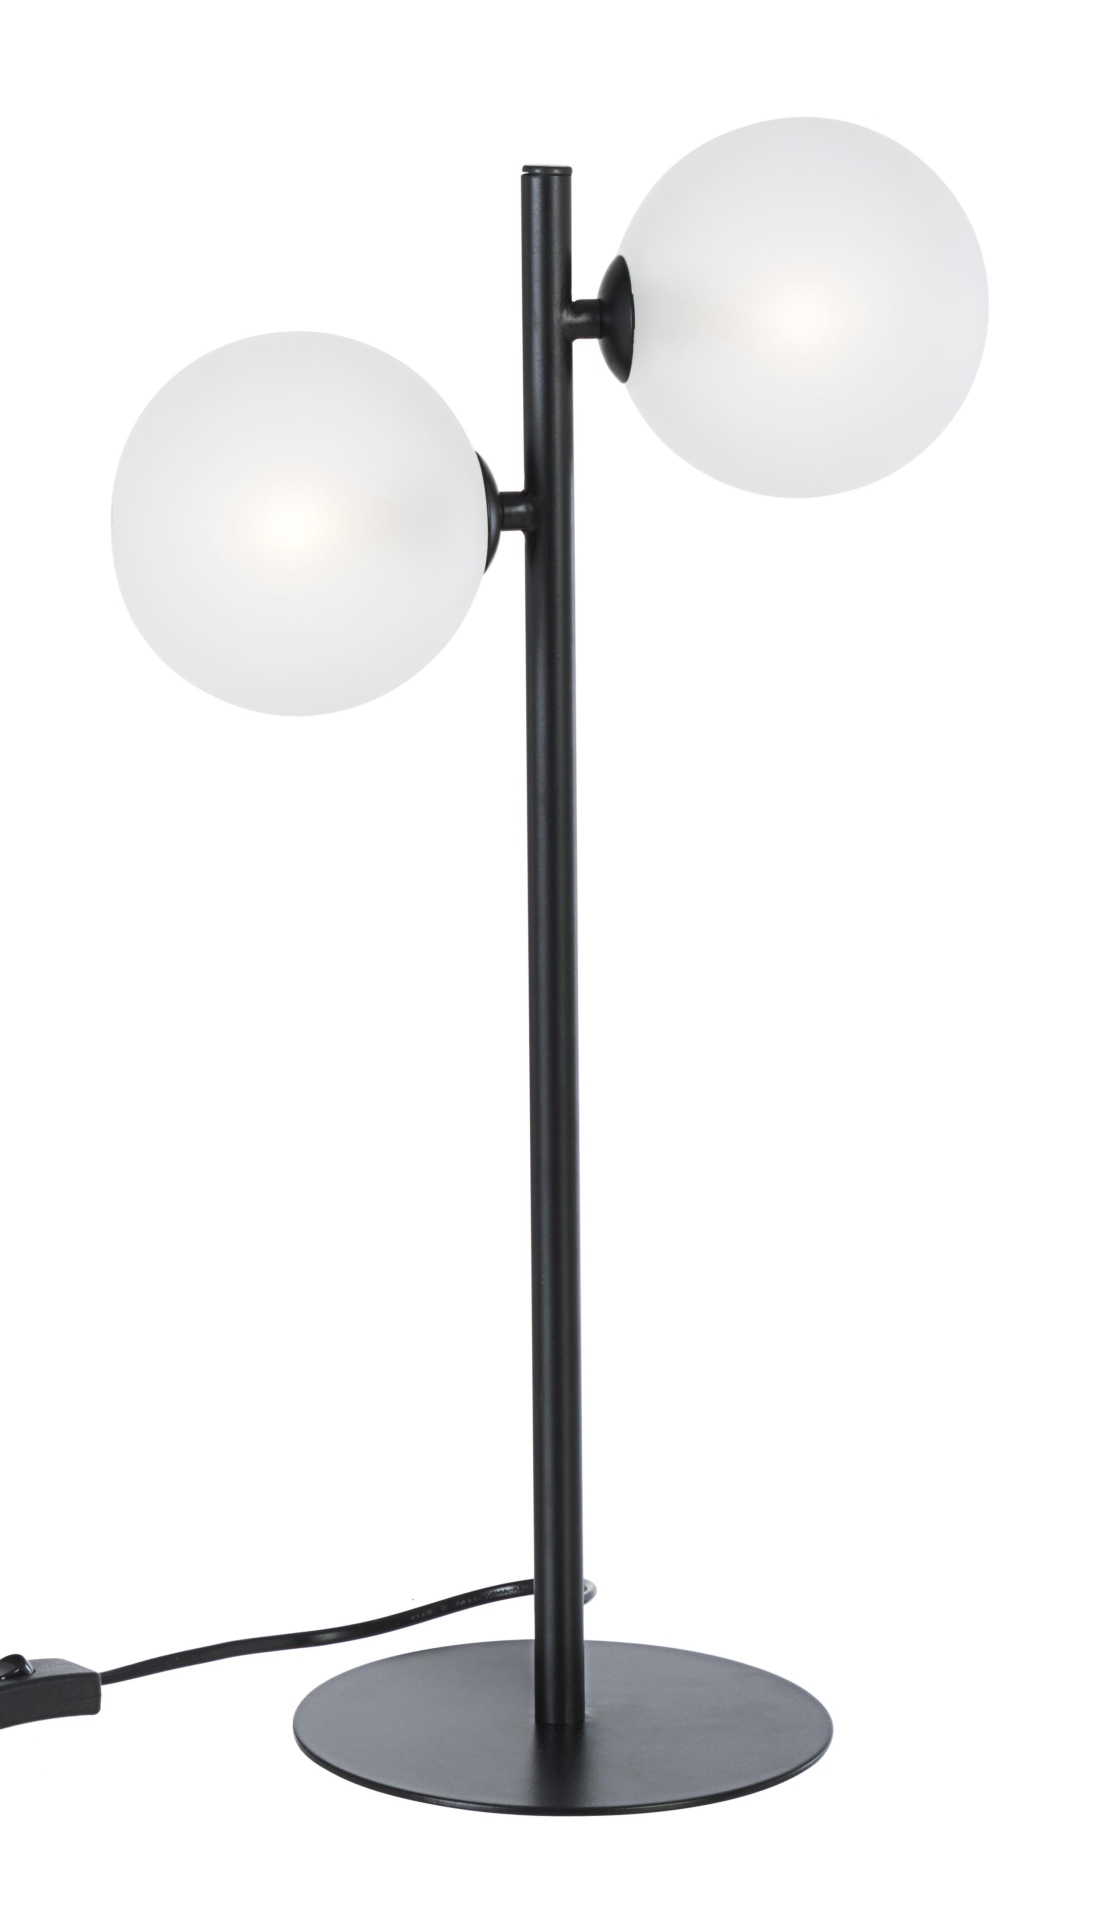 Die Tischleuchte Balls überzeugt mit ihrem modernen Design. Gefertigt wurde sie aus Metall, welches einen schwarzen Farbton besitzt. Die Lichtquellen sind aus Milchglas. Die Lampe besitzt eine Höhe von 54 cm.